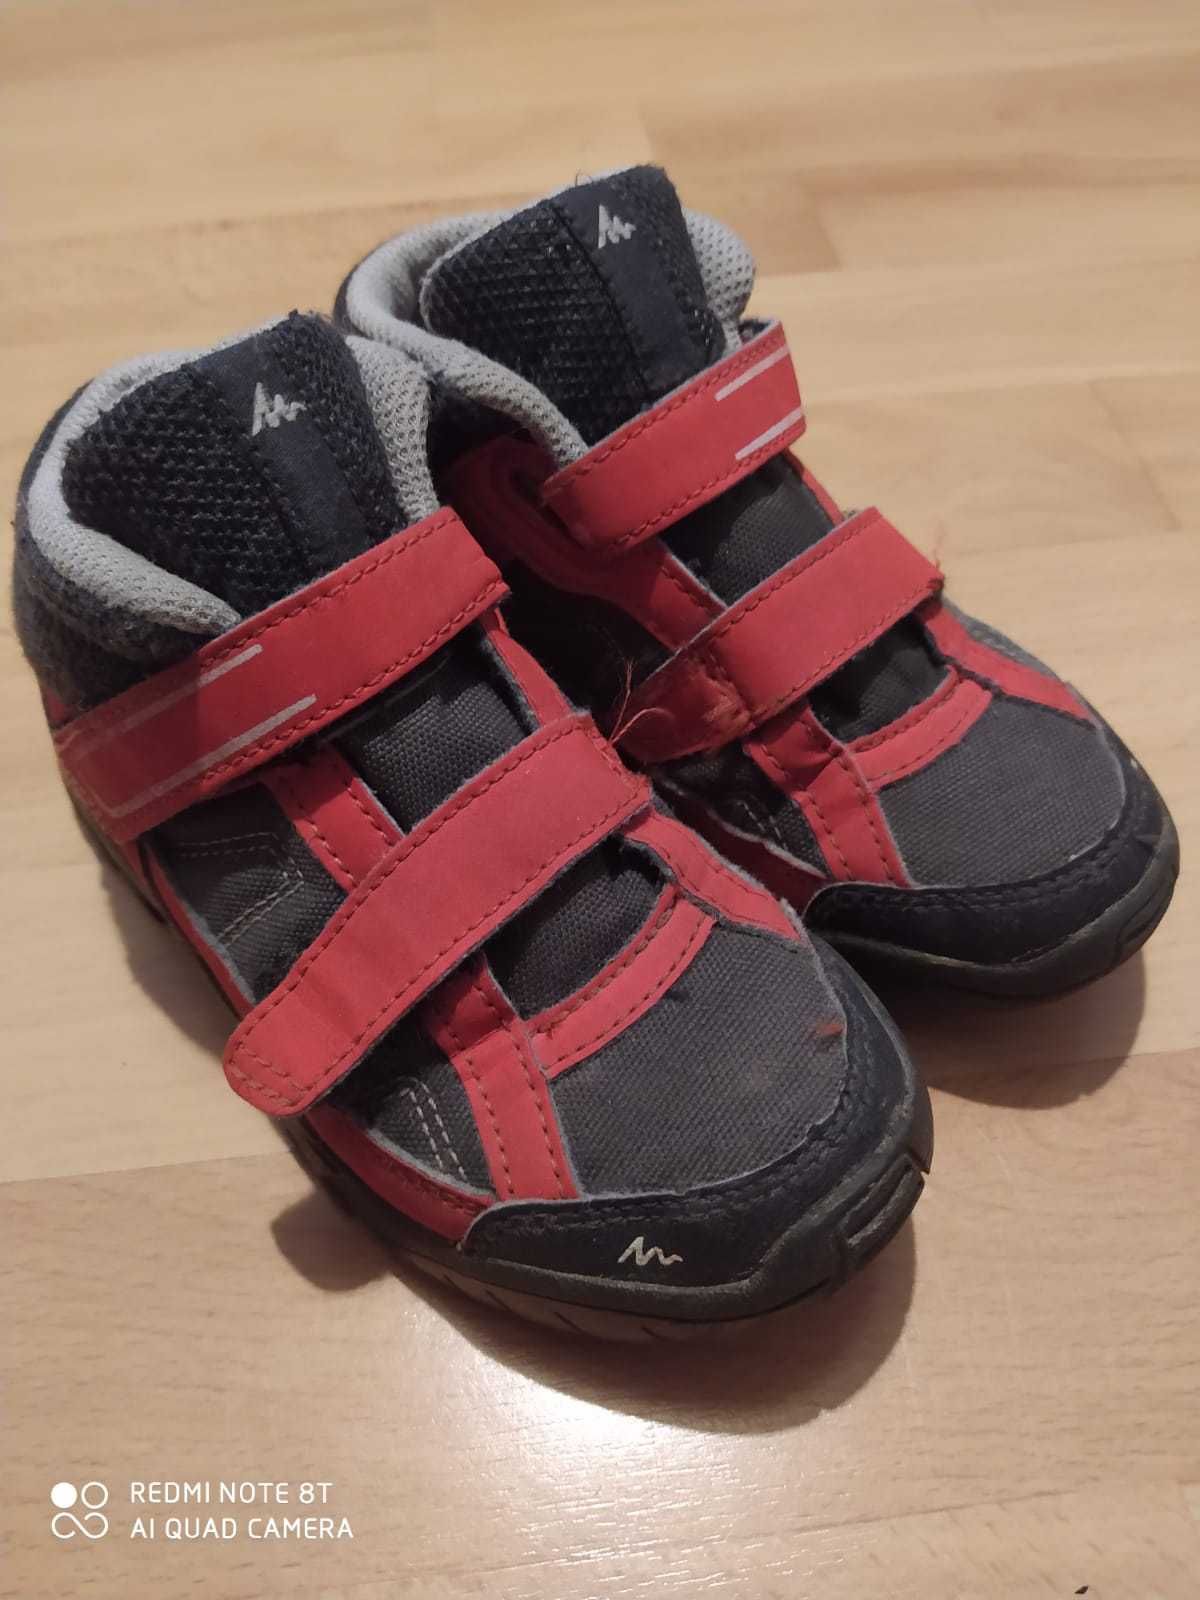 Buty dla dzieci firmy Quechua rozmiar 28cm.